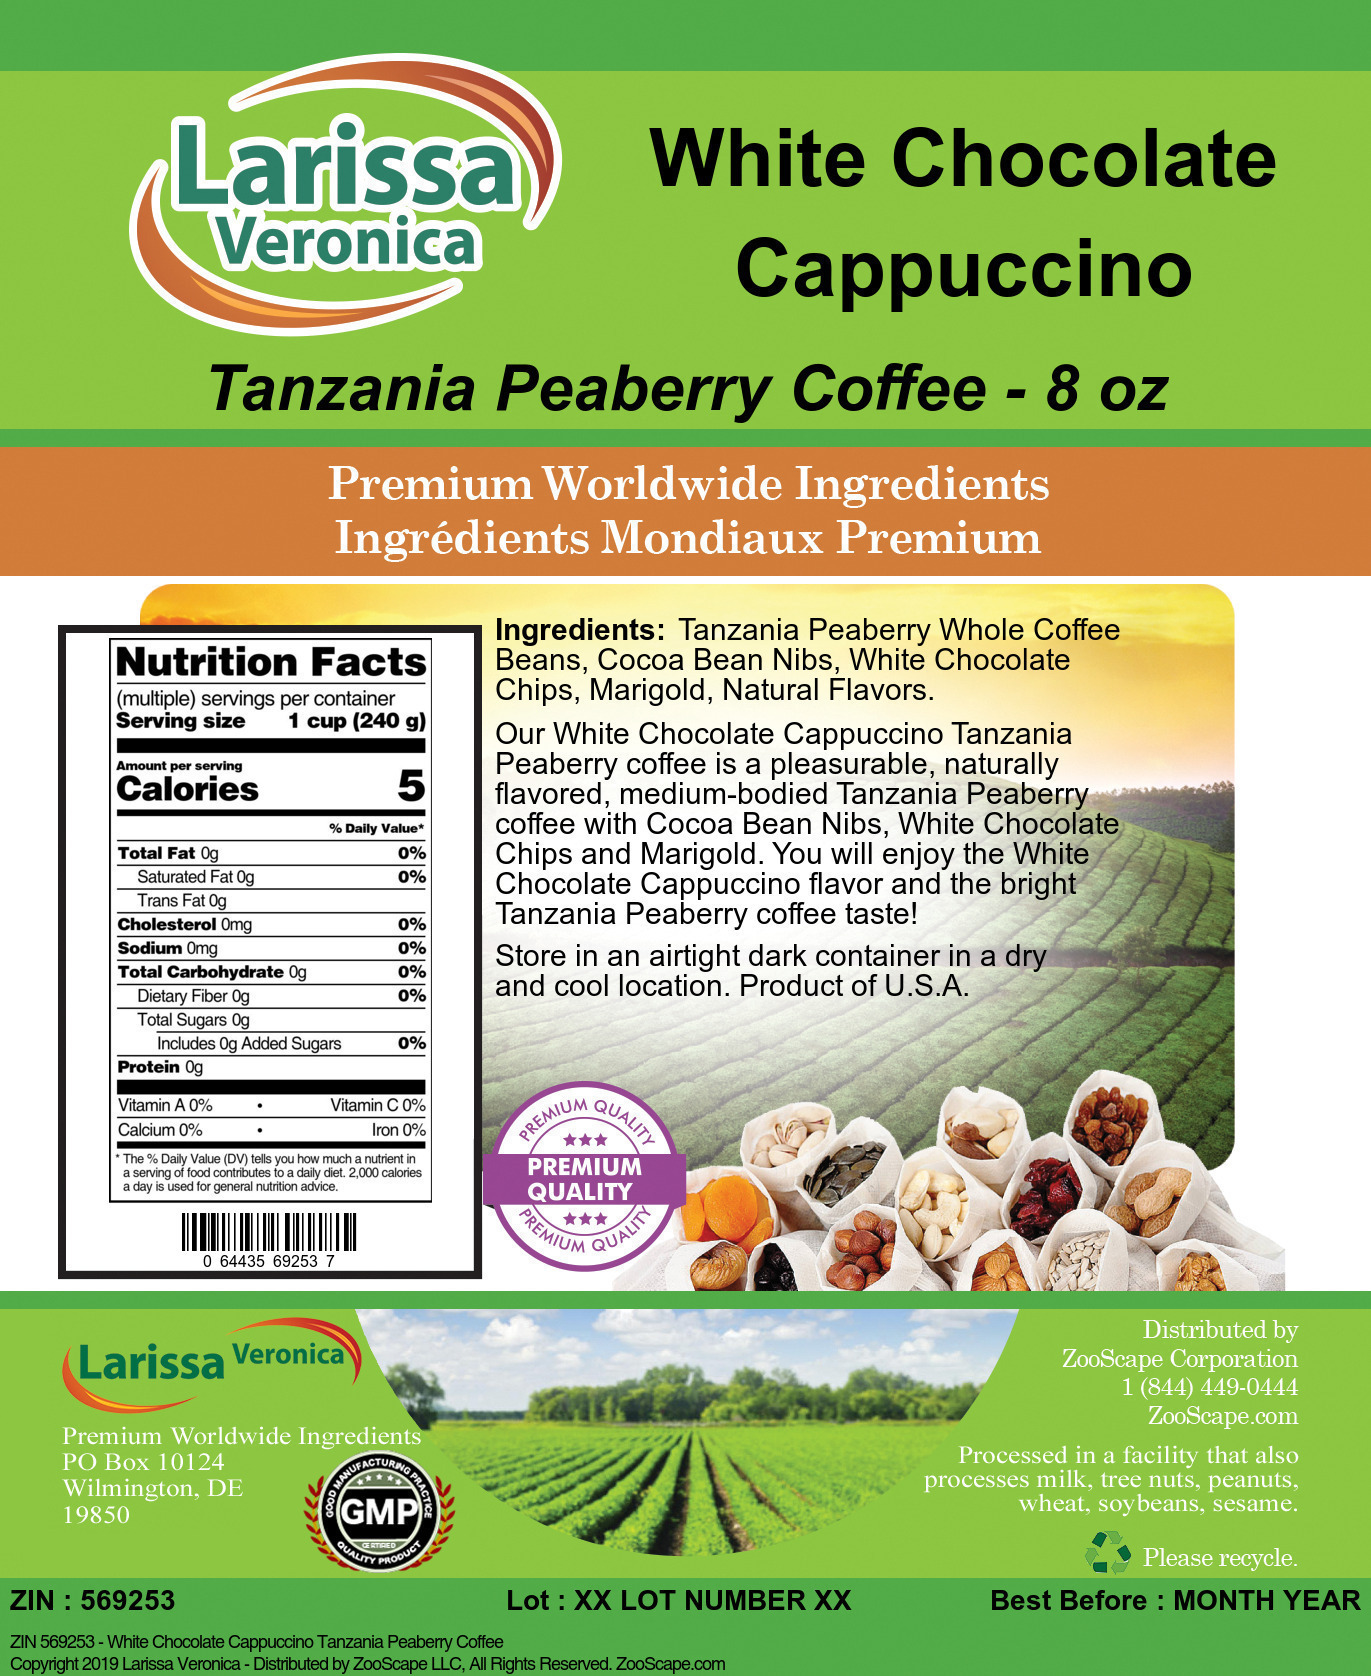 White Chocolate Cappuccino Tanzania Peaberry Coffee - Label